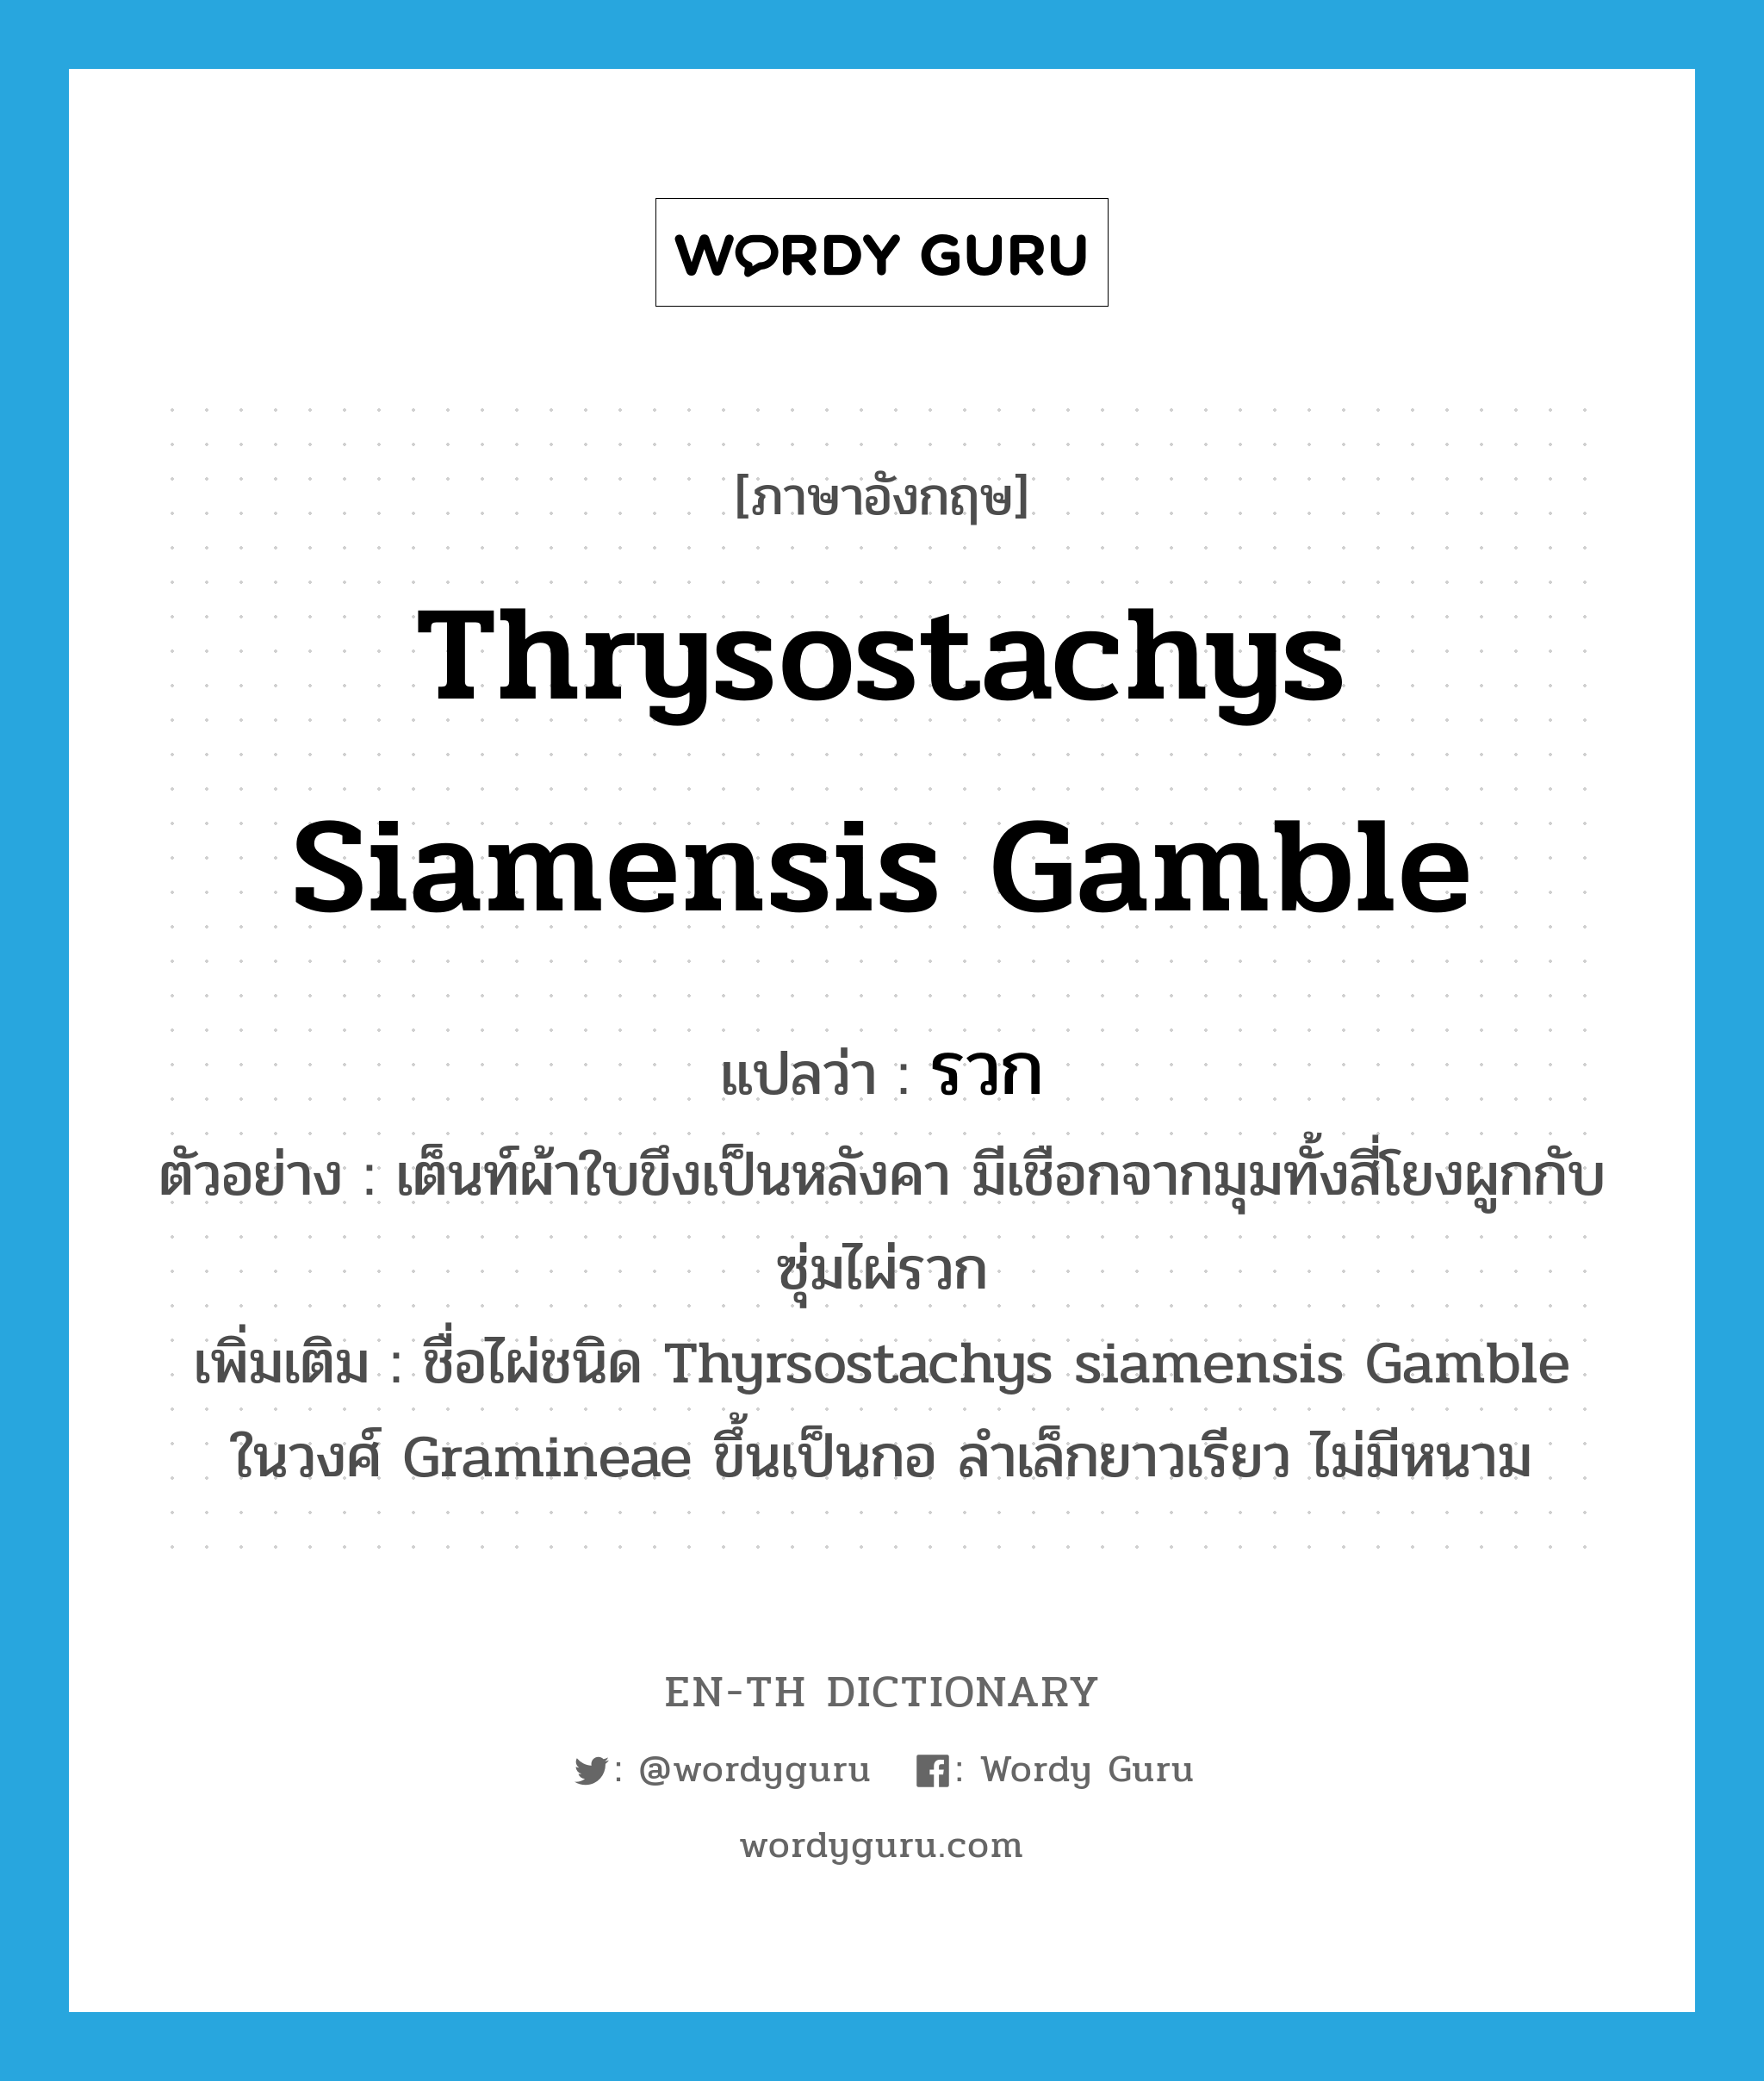 รวก ภาษาอังกฤษ?, คำศัพท์ภาษาอังกฤษ รวก แปลว่า Thrysostachys siamensis Gamble ประเภท N ตัวอย่าง เต็นท์ผ้าใบขึงเป็นหลังคา มีเชือกจากมุมทั้งสี่โยงผูกกับซุ่มไผ่รวก เพิ่มเติม ชื่อไผ่ชนิด Thyrsostachys siamensis Gamble ในวงศ์ Gramineae ขึ้นเป็นกอ ลำเล็กยาวเรียว ไม่มีหนาม หมวด N